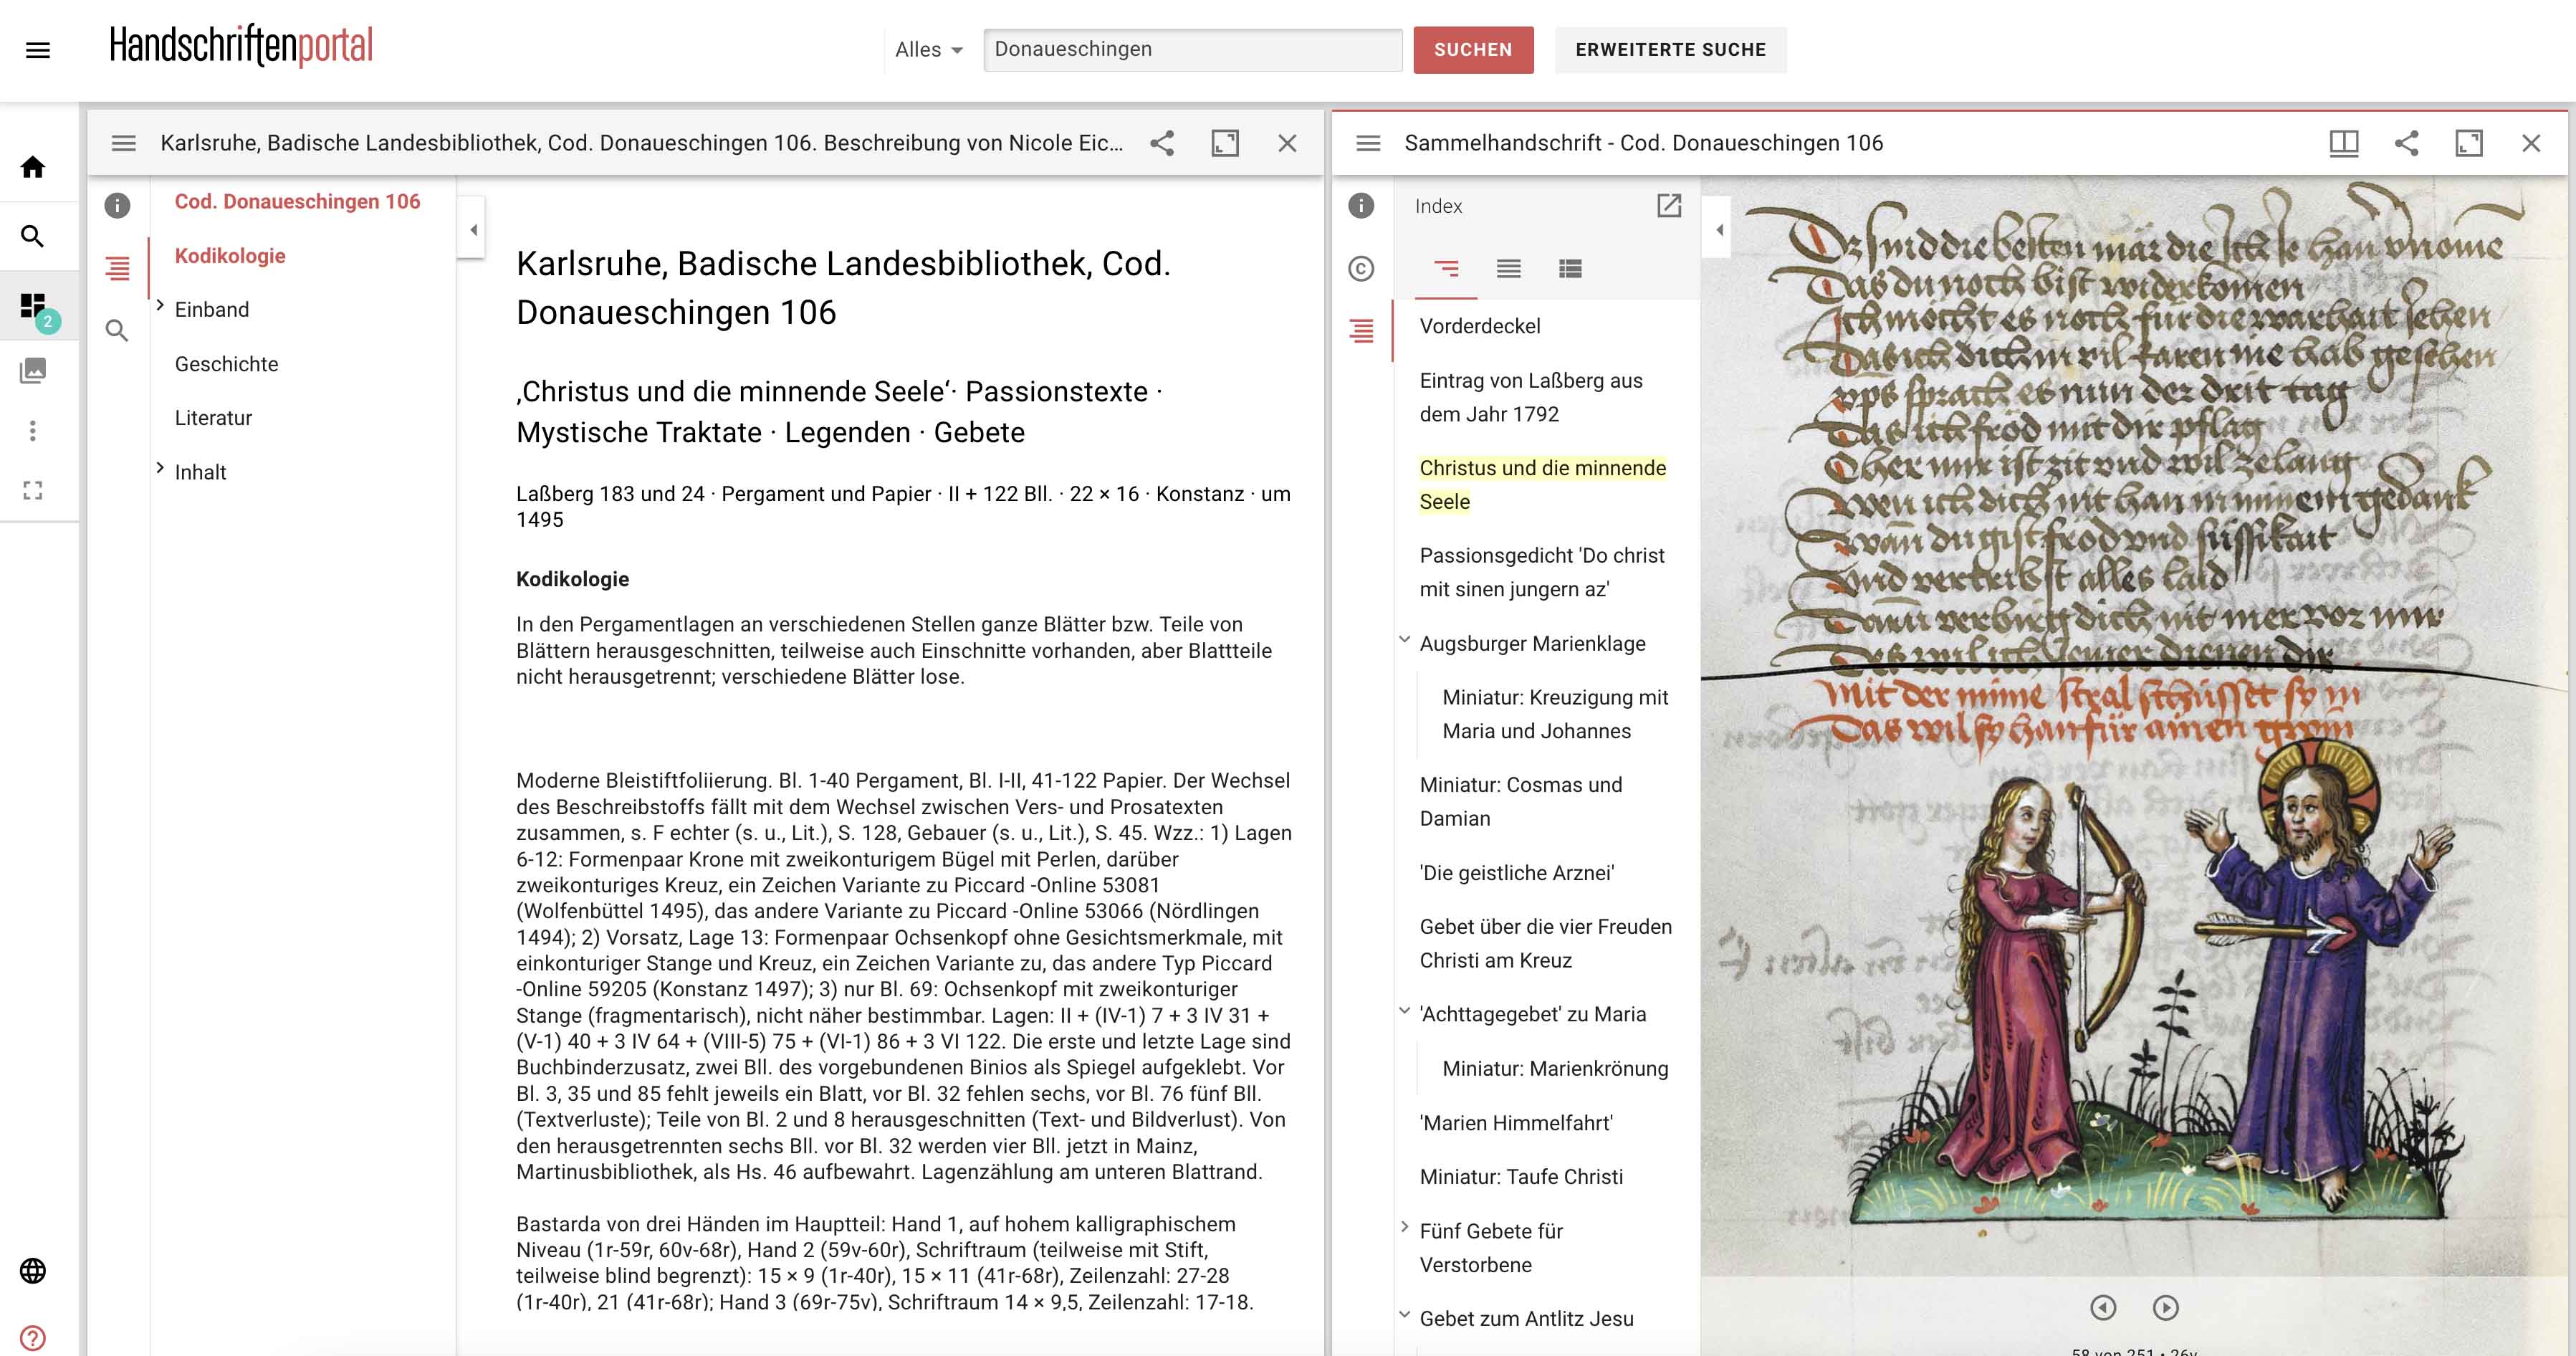 Screenshot der Website handschriftenportal.de, Beschreibung und Digitalisat von Cod. Donau-eschingen 106 nebeneinander, das Digitalisat mit Christus und der minnenden Seele.